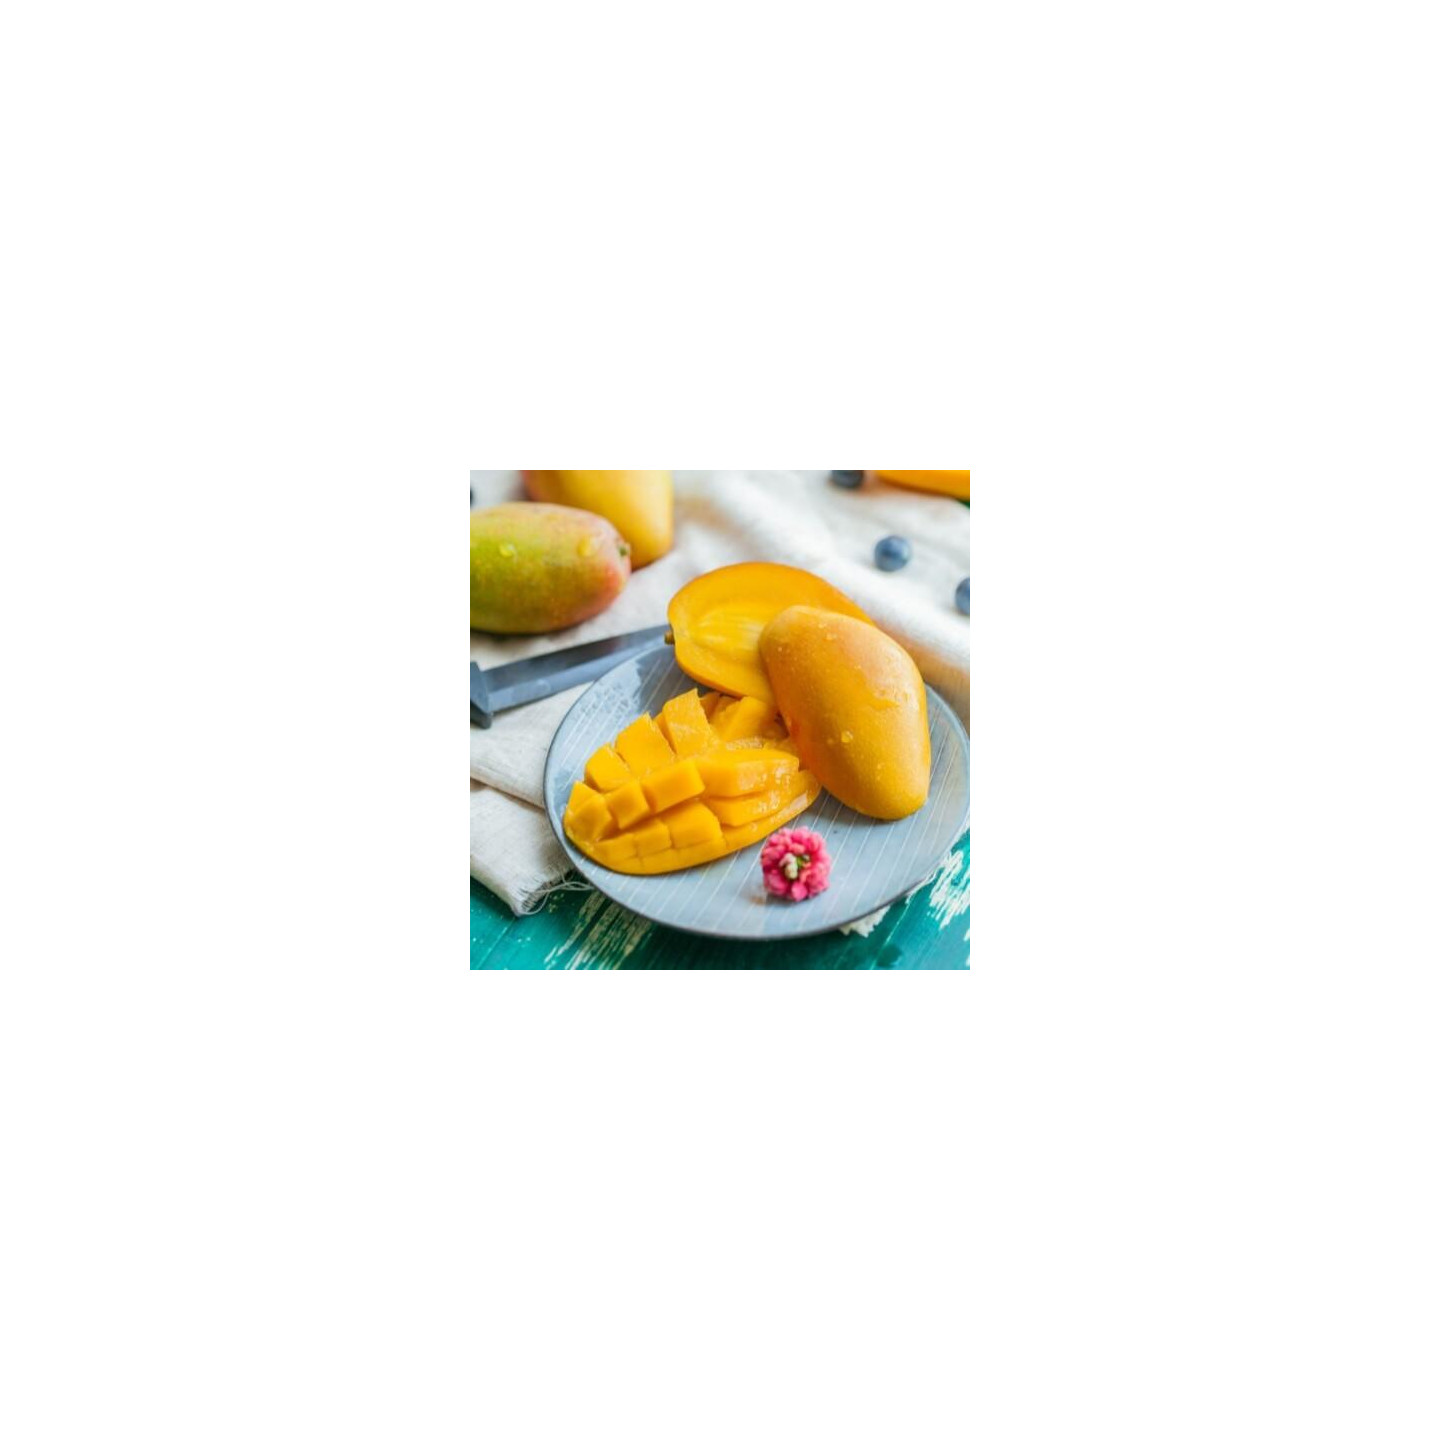 Purée de mangues sucrée 1 kg - Ravifruit